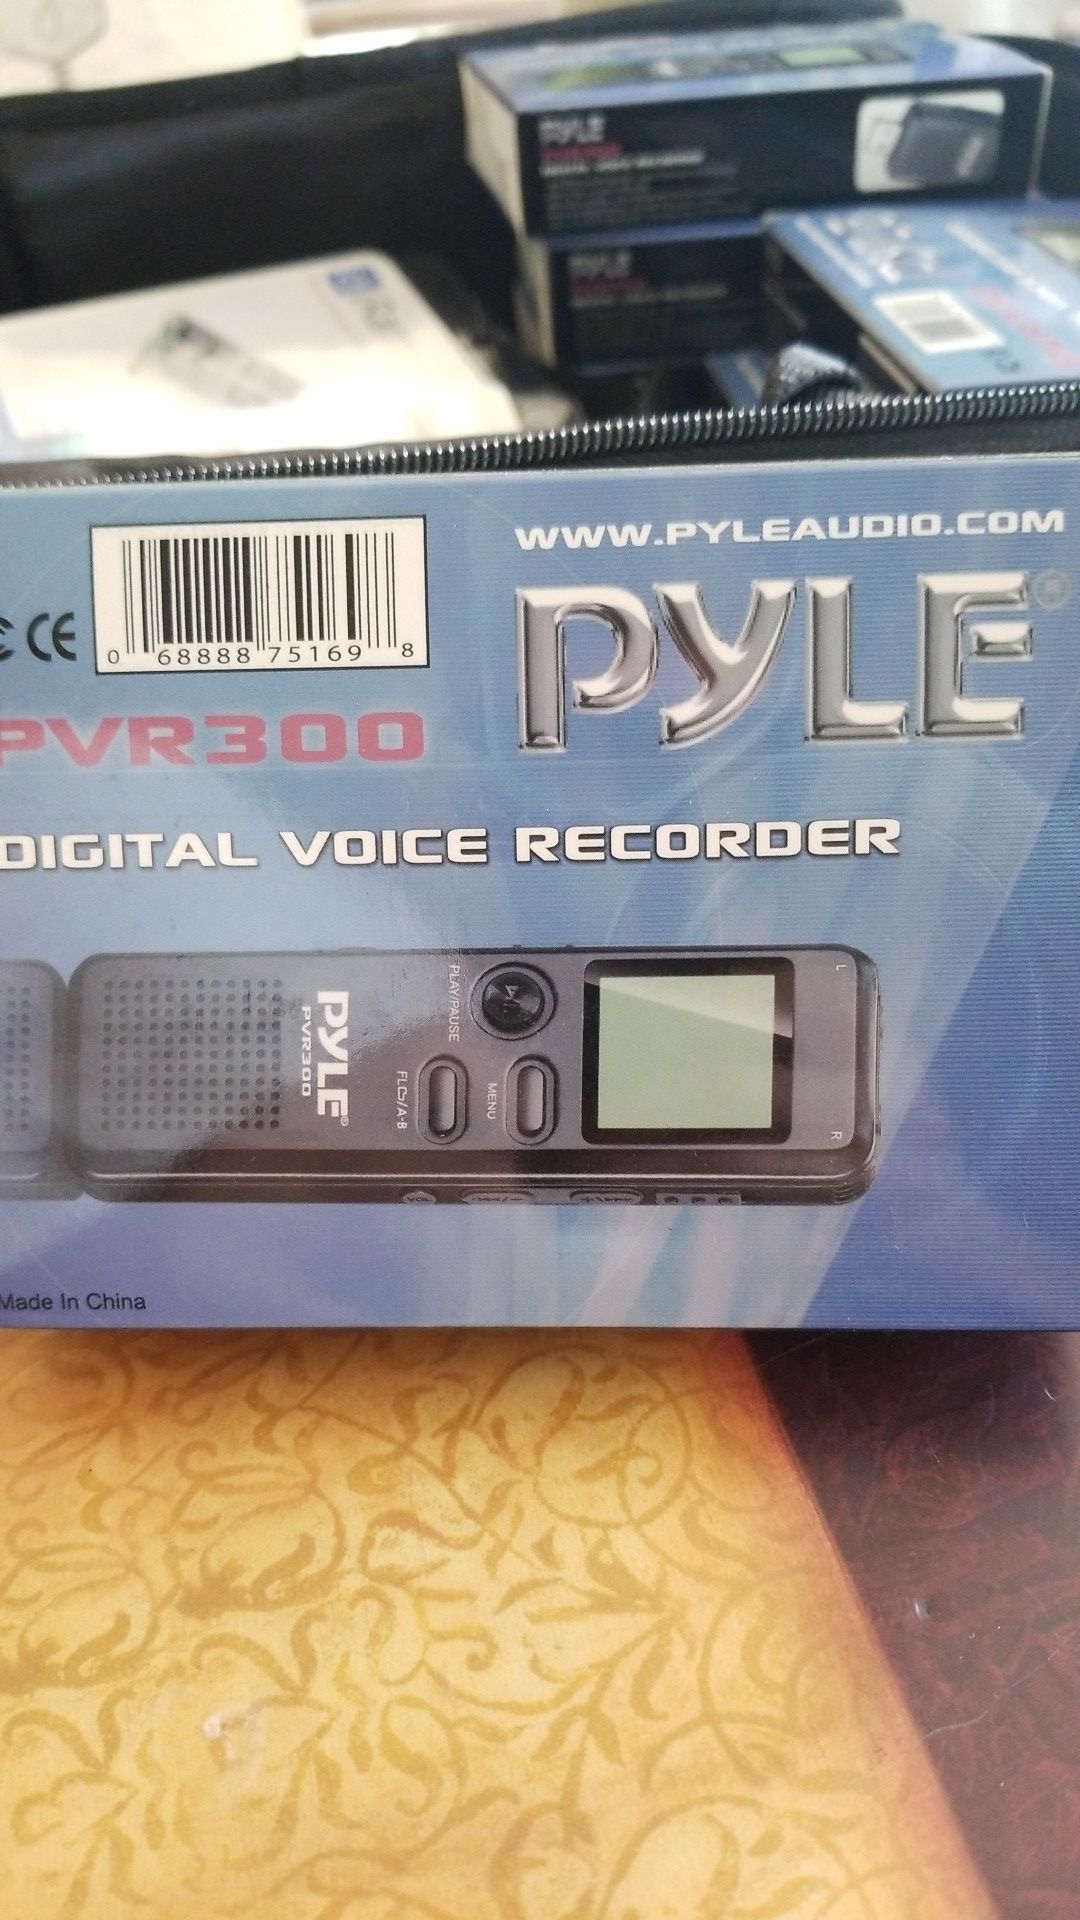 Pyle digital voice recorder